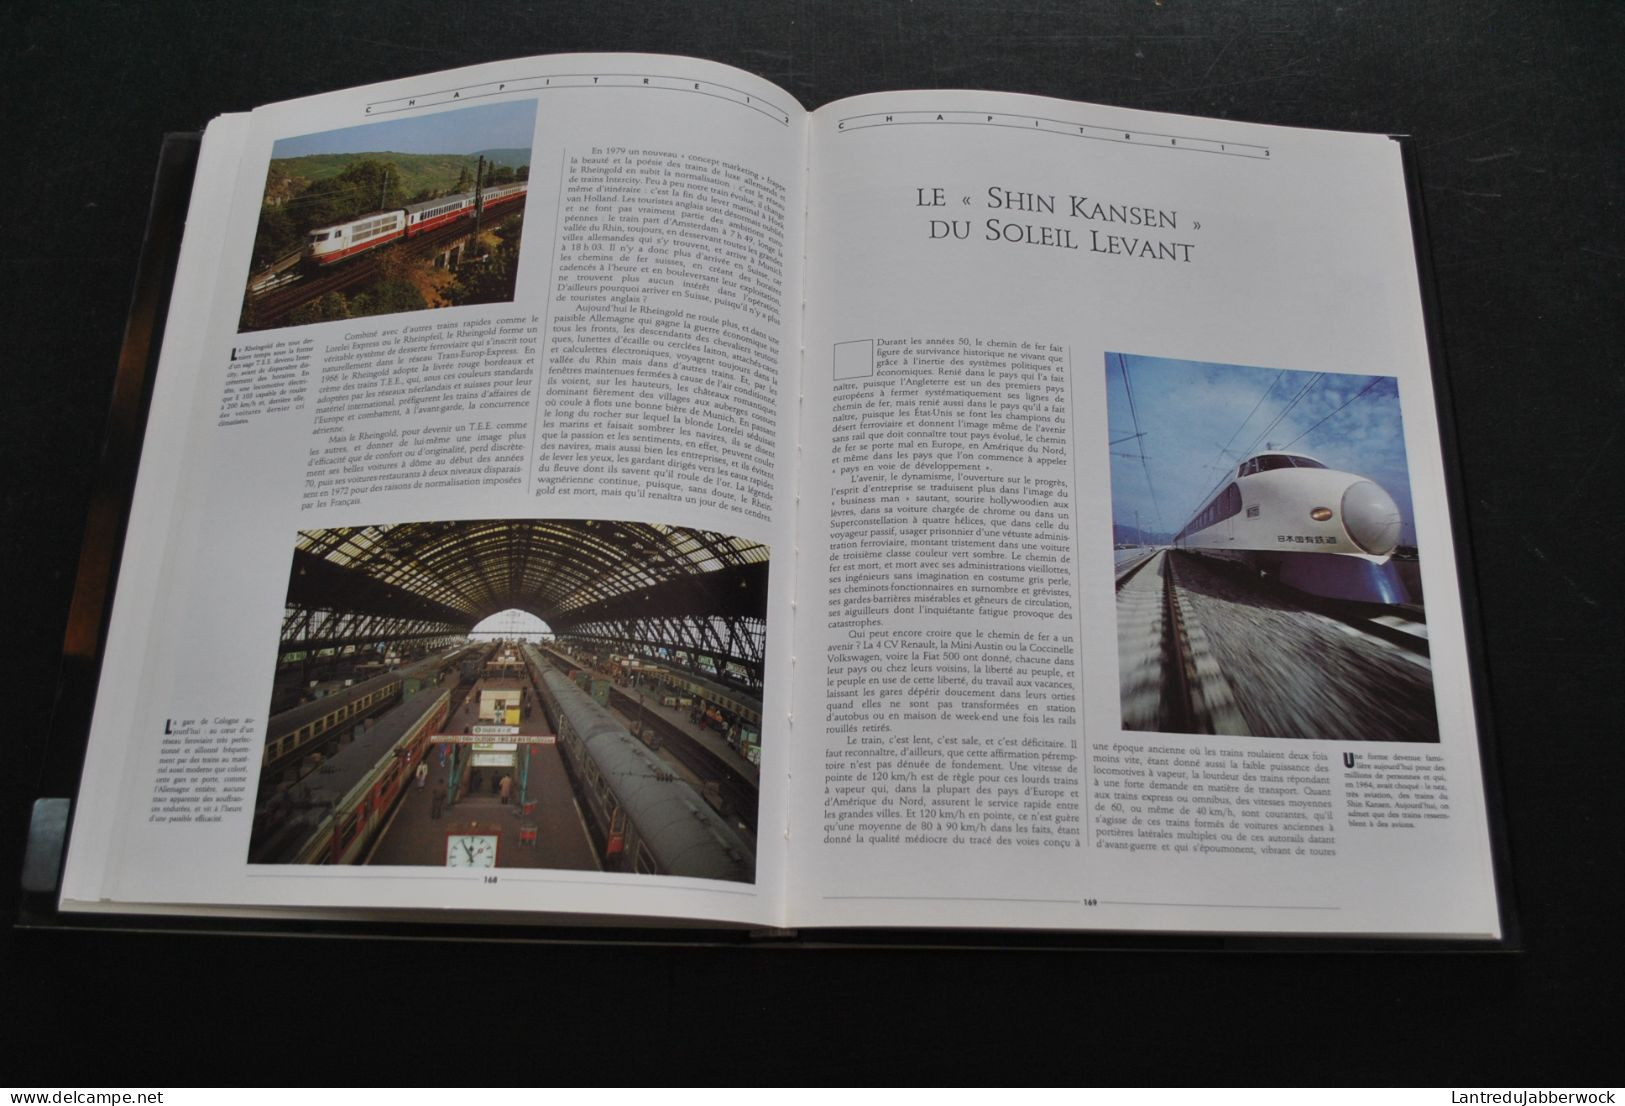 LEMMING Les grands trains de 1830 à nos jours Larousse La flèche d'or Train bleu Shin Kansen TGV Transsibérien